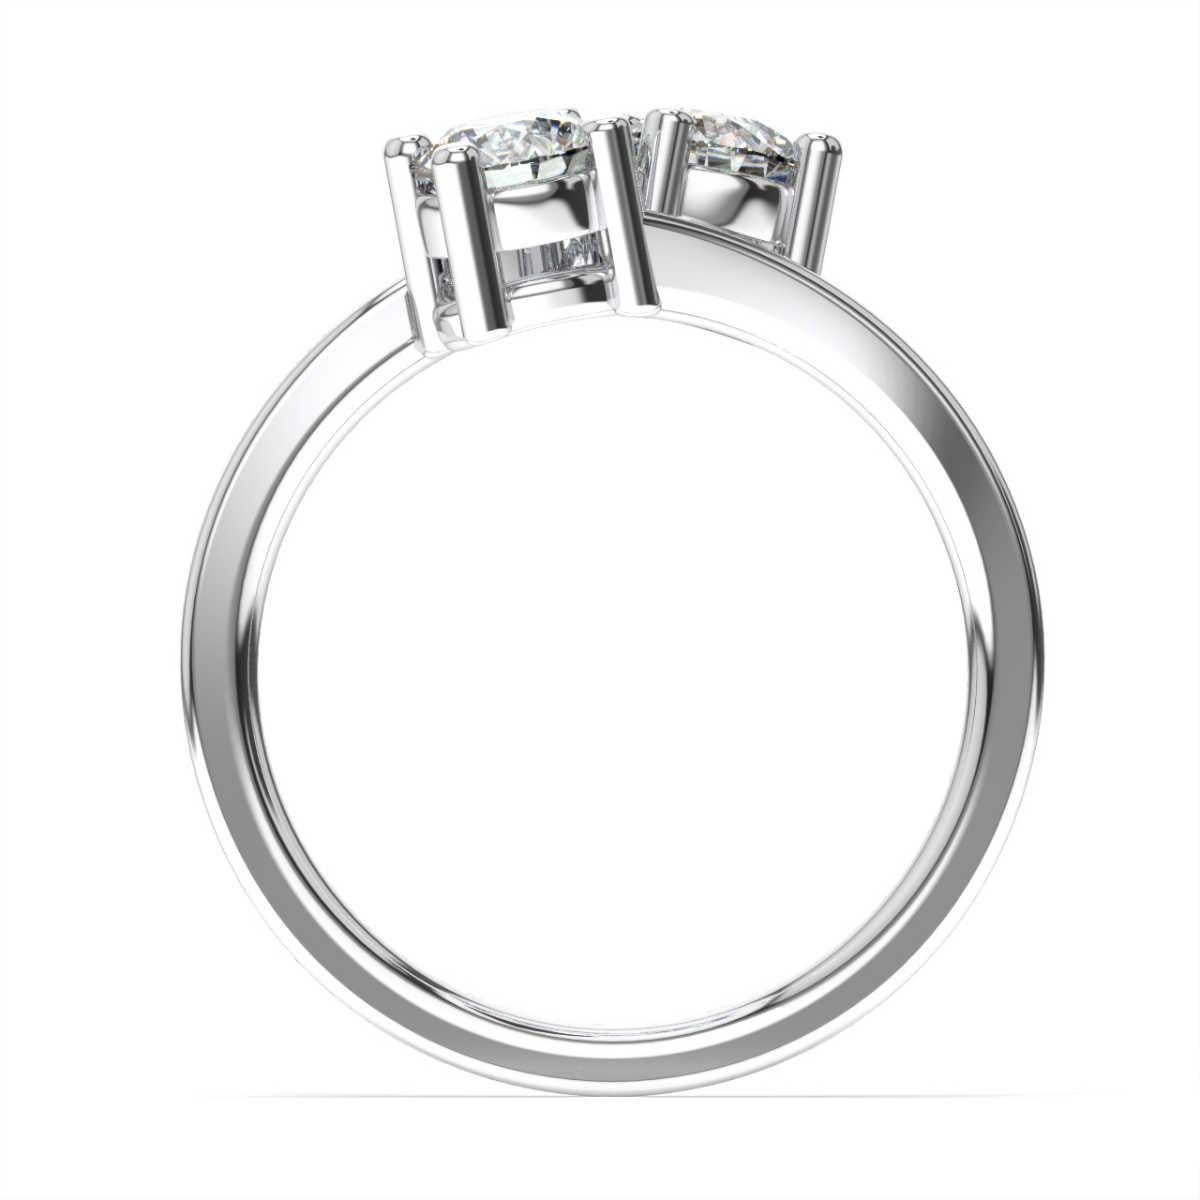 Dieser Ring enthält zwei perfekt aufeinander abgestimmte runde Diamanten von je 0,40 (0,80 ct. tw), die die tiefe Verbindung zwischen zwei Seelenverwandten symbolisieren. Erleben Sie den Unterschied!

Einzelheiten zum Produkt: 

Farbe des zentralen